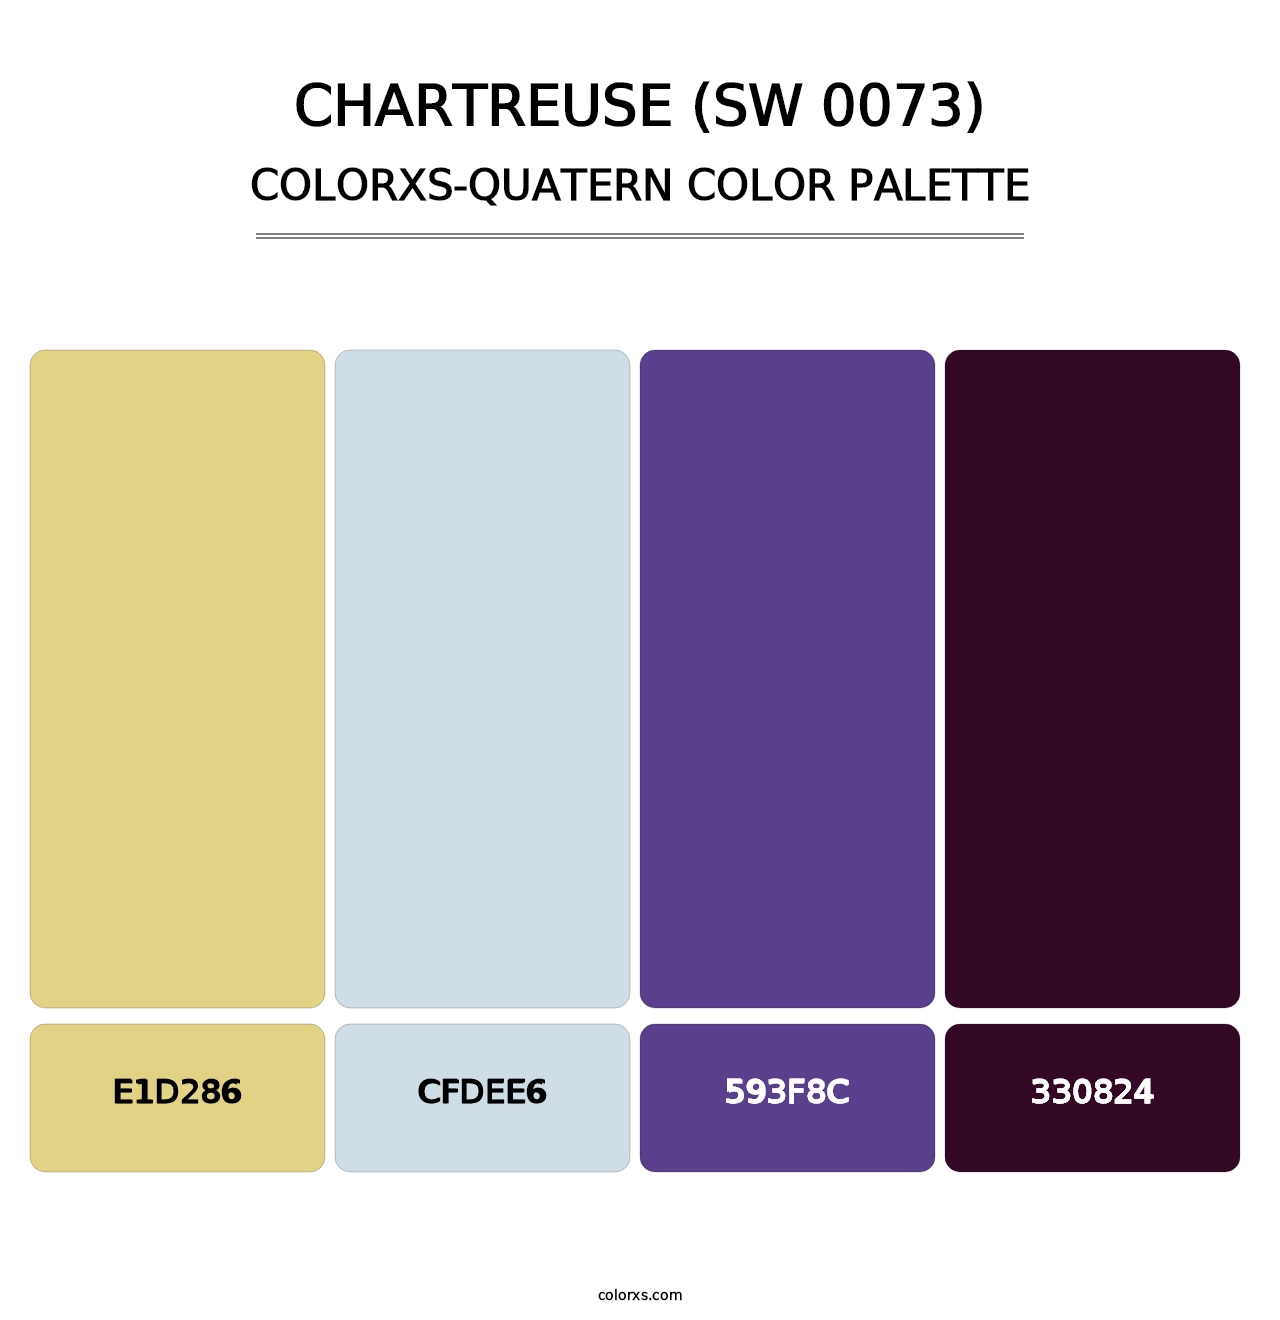 Chartreuse (SW 0073) - Colorxs Quatern Palette